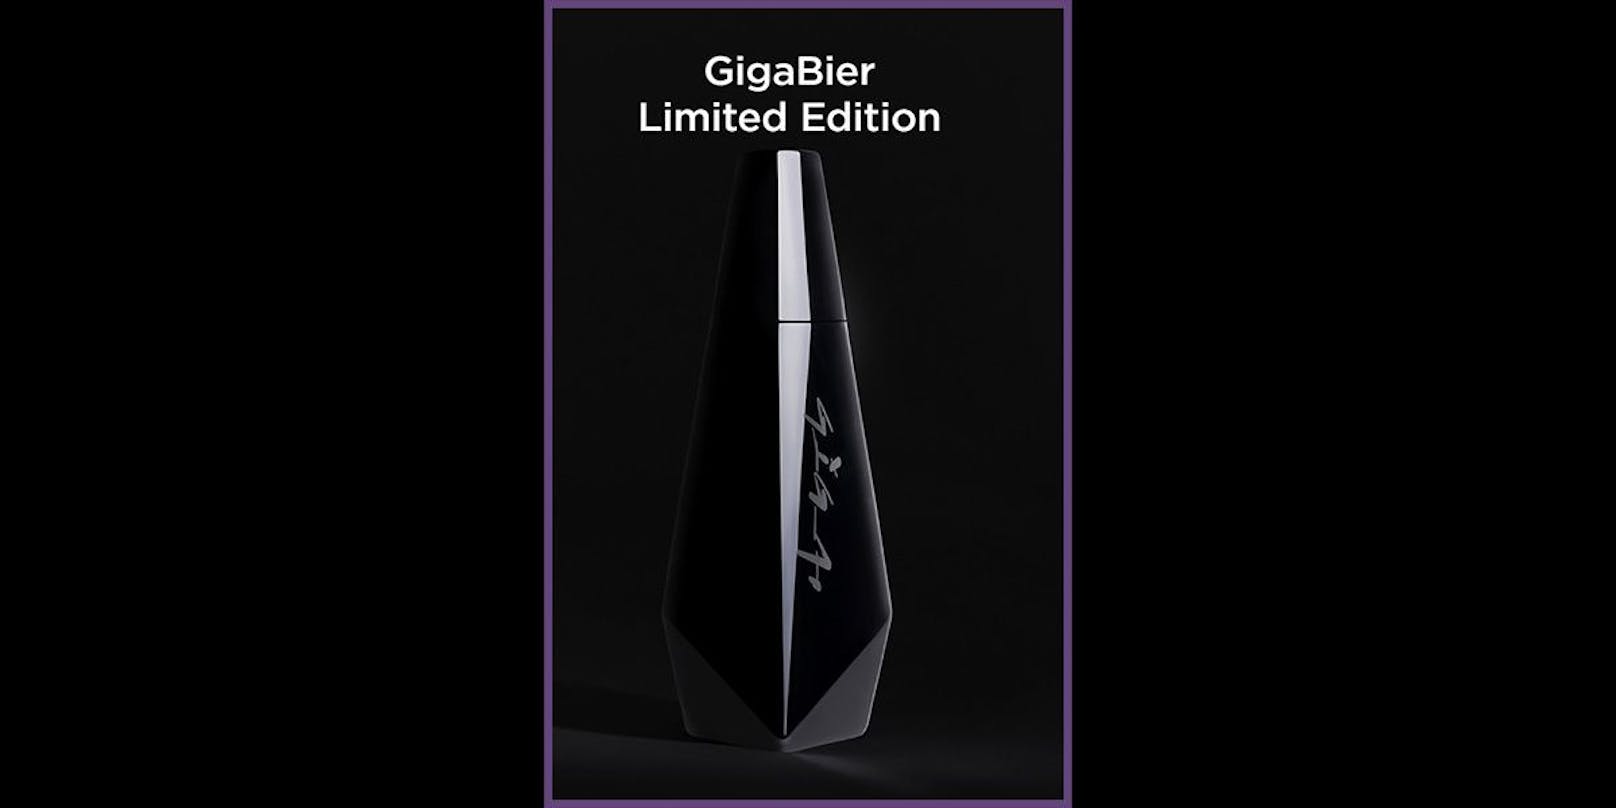 Schwarz, schlank, elegant: Allein das Design der Flasche erregt Aufmerksamkeit.